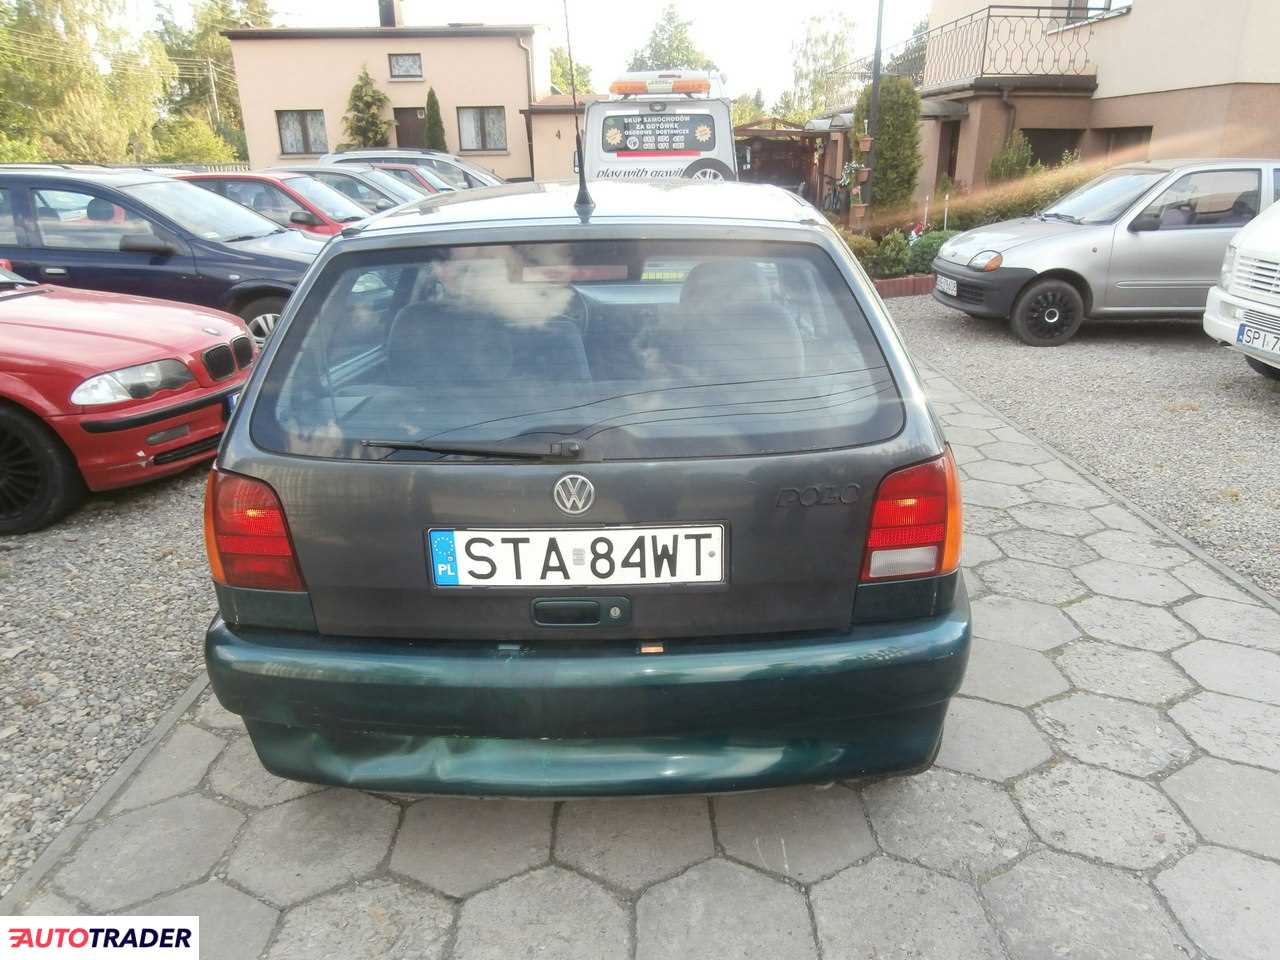 Volkswagen Polo 1.4 benzyna 60 KM 1996r. (Dobieszowice